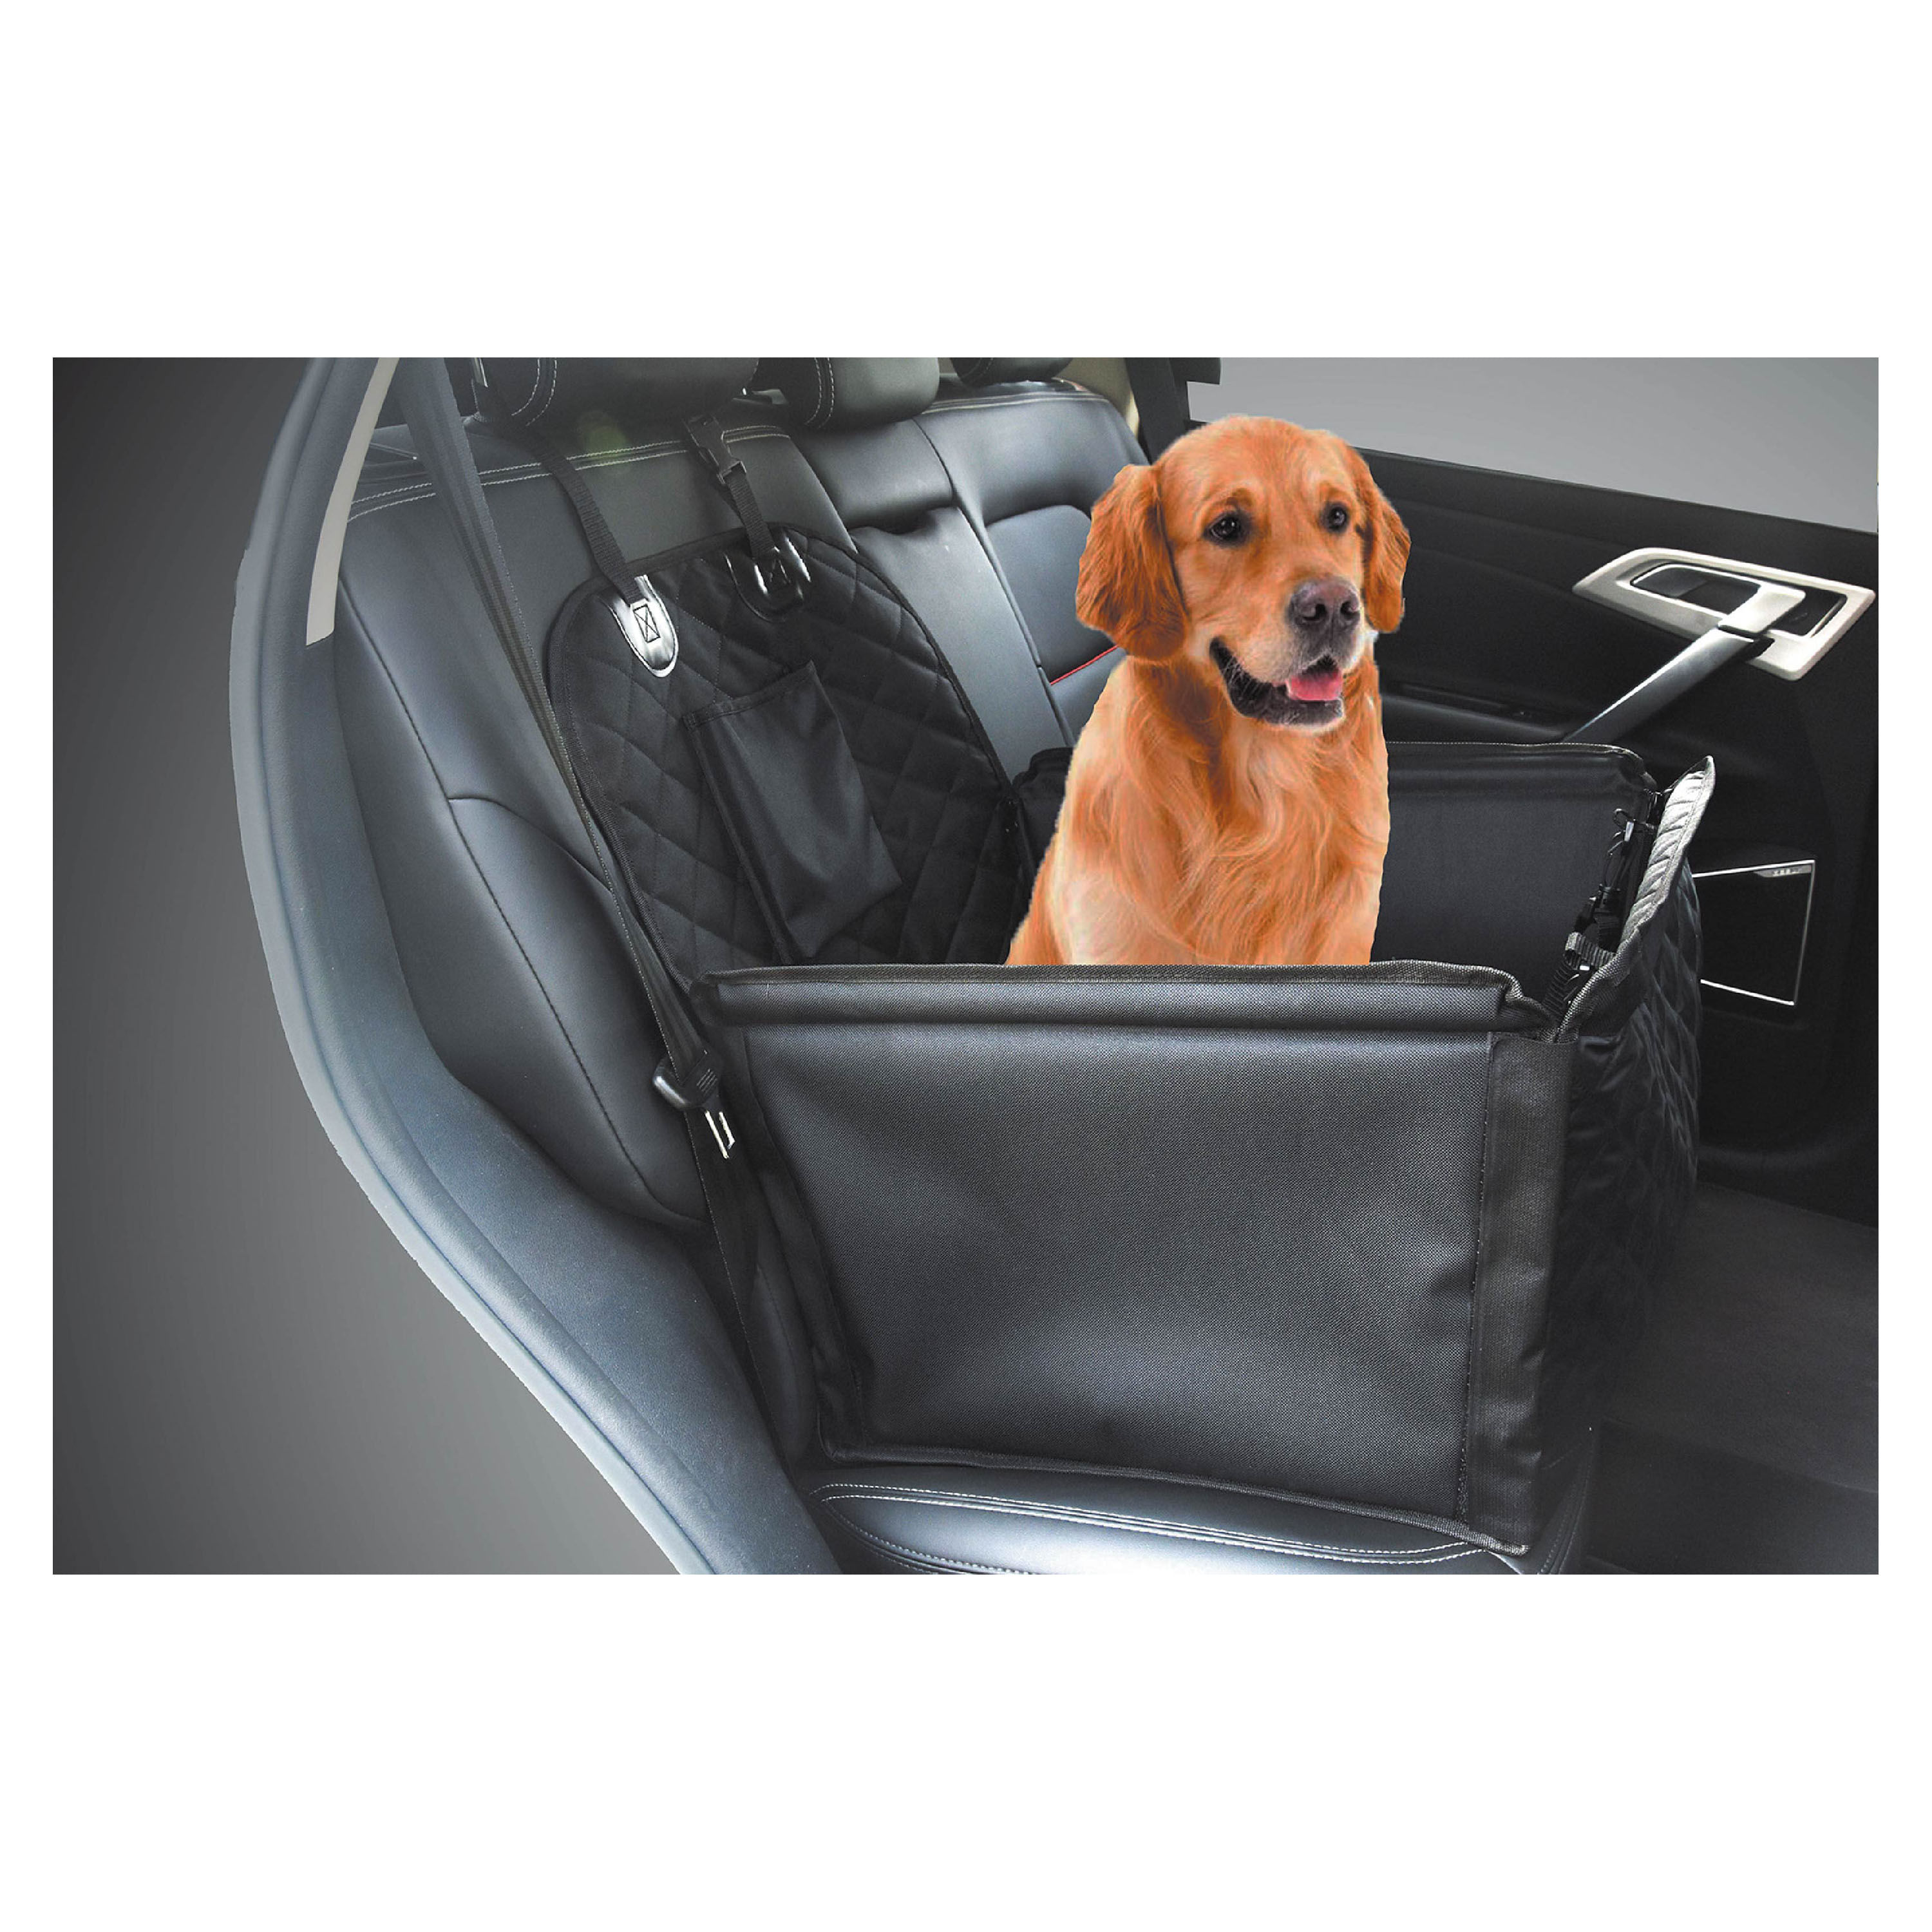  Cesta de coche para perro, asiento portátil para mascotas,  estructura resistente, impermeable, transpirable, con correa de seguridad  para vehículos (negro) : Productos para Animales